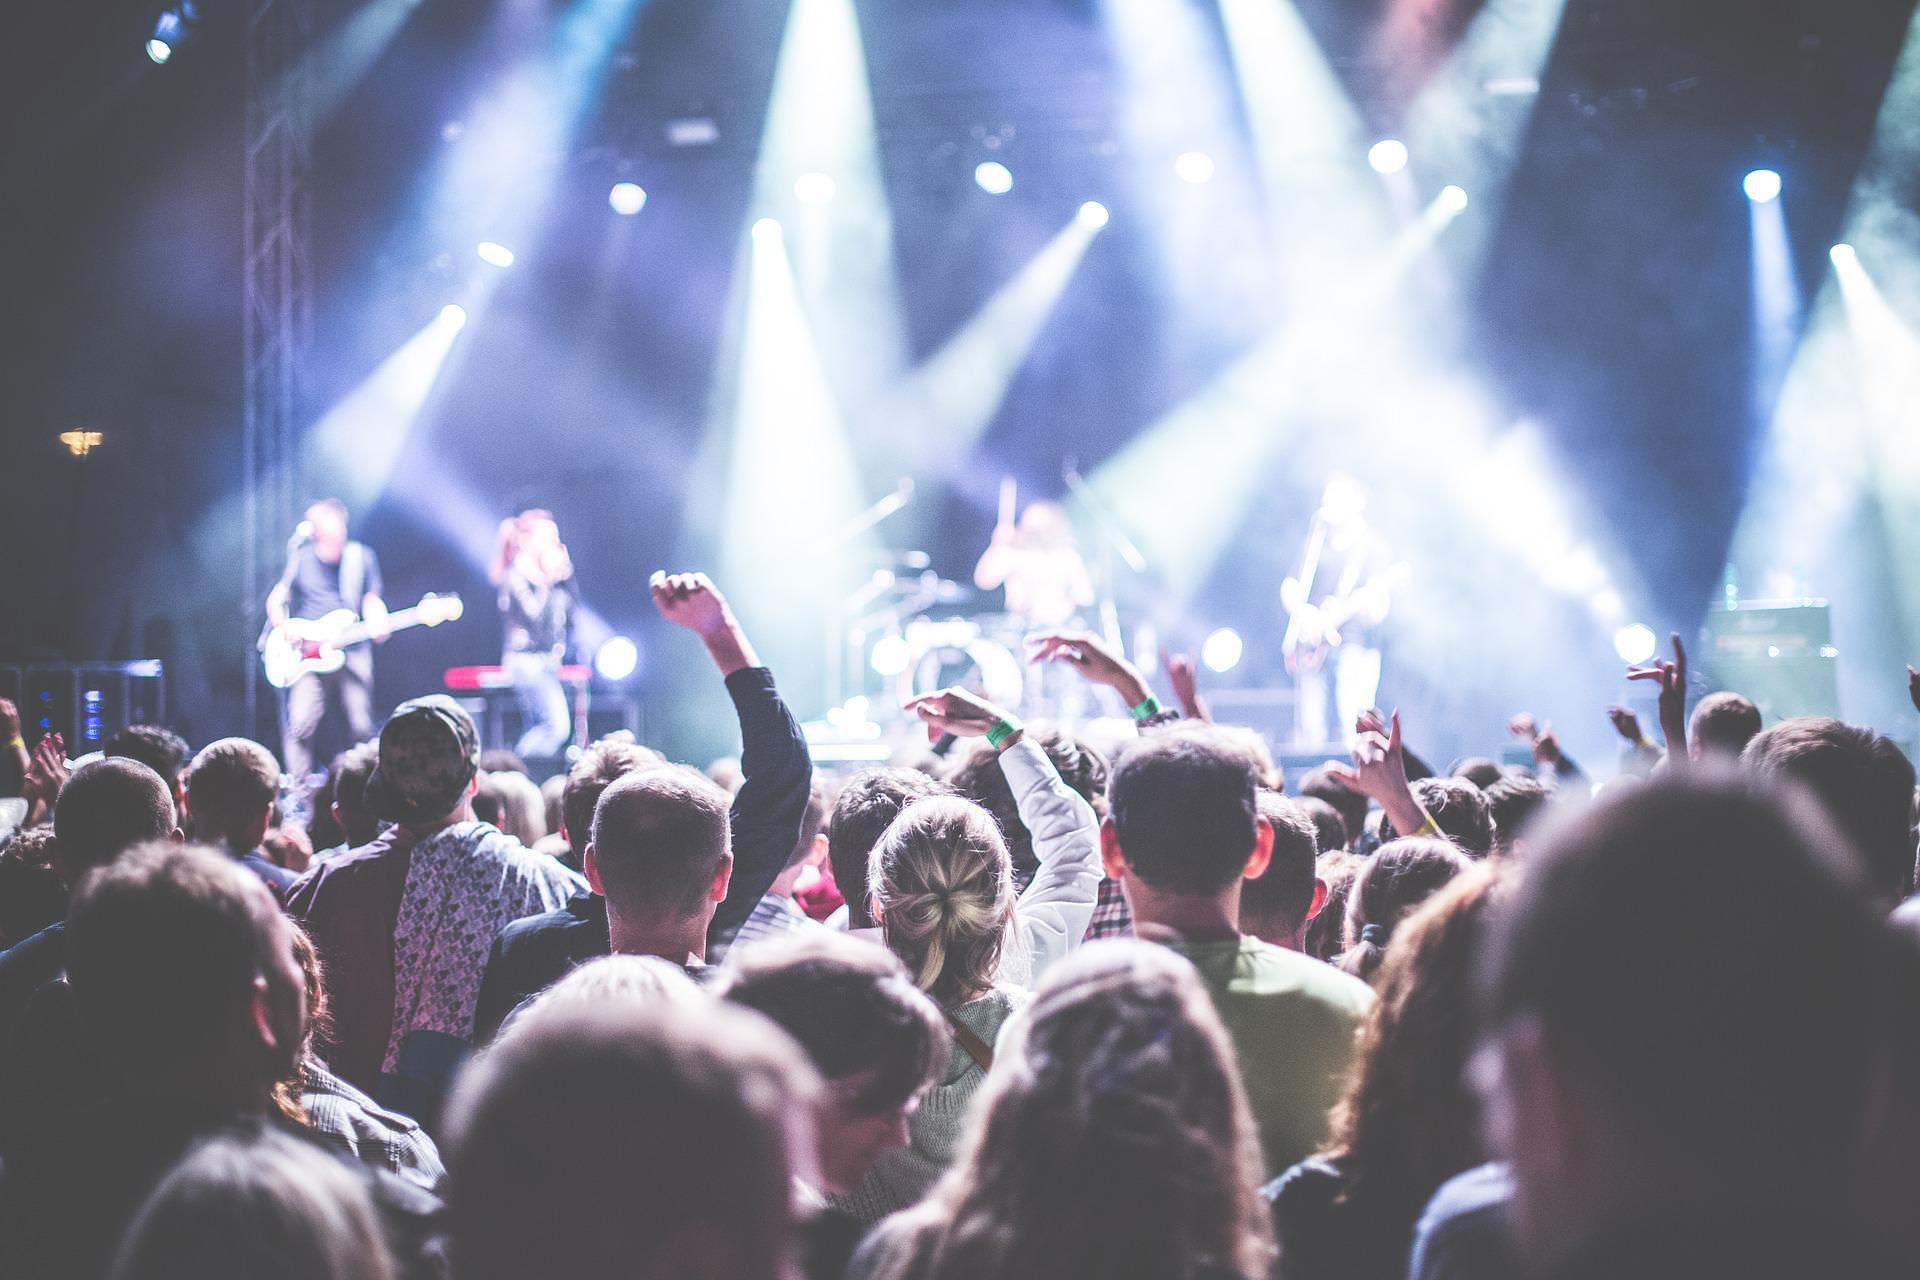 zabava-party-koncert-pixabay.jpg